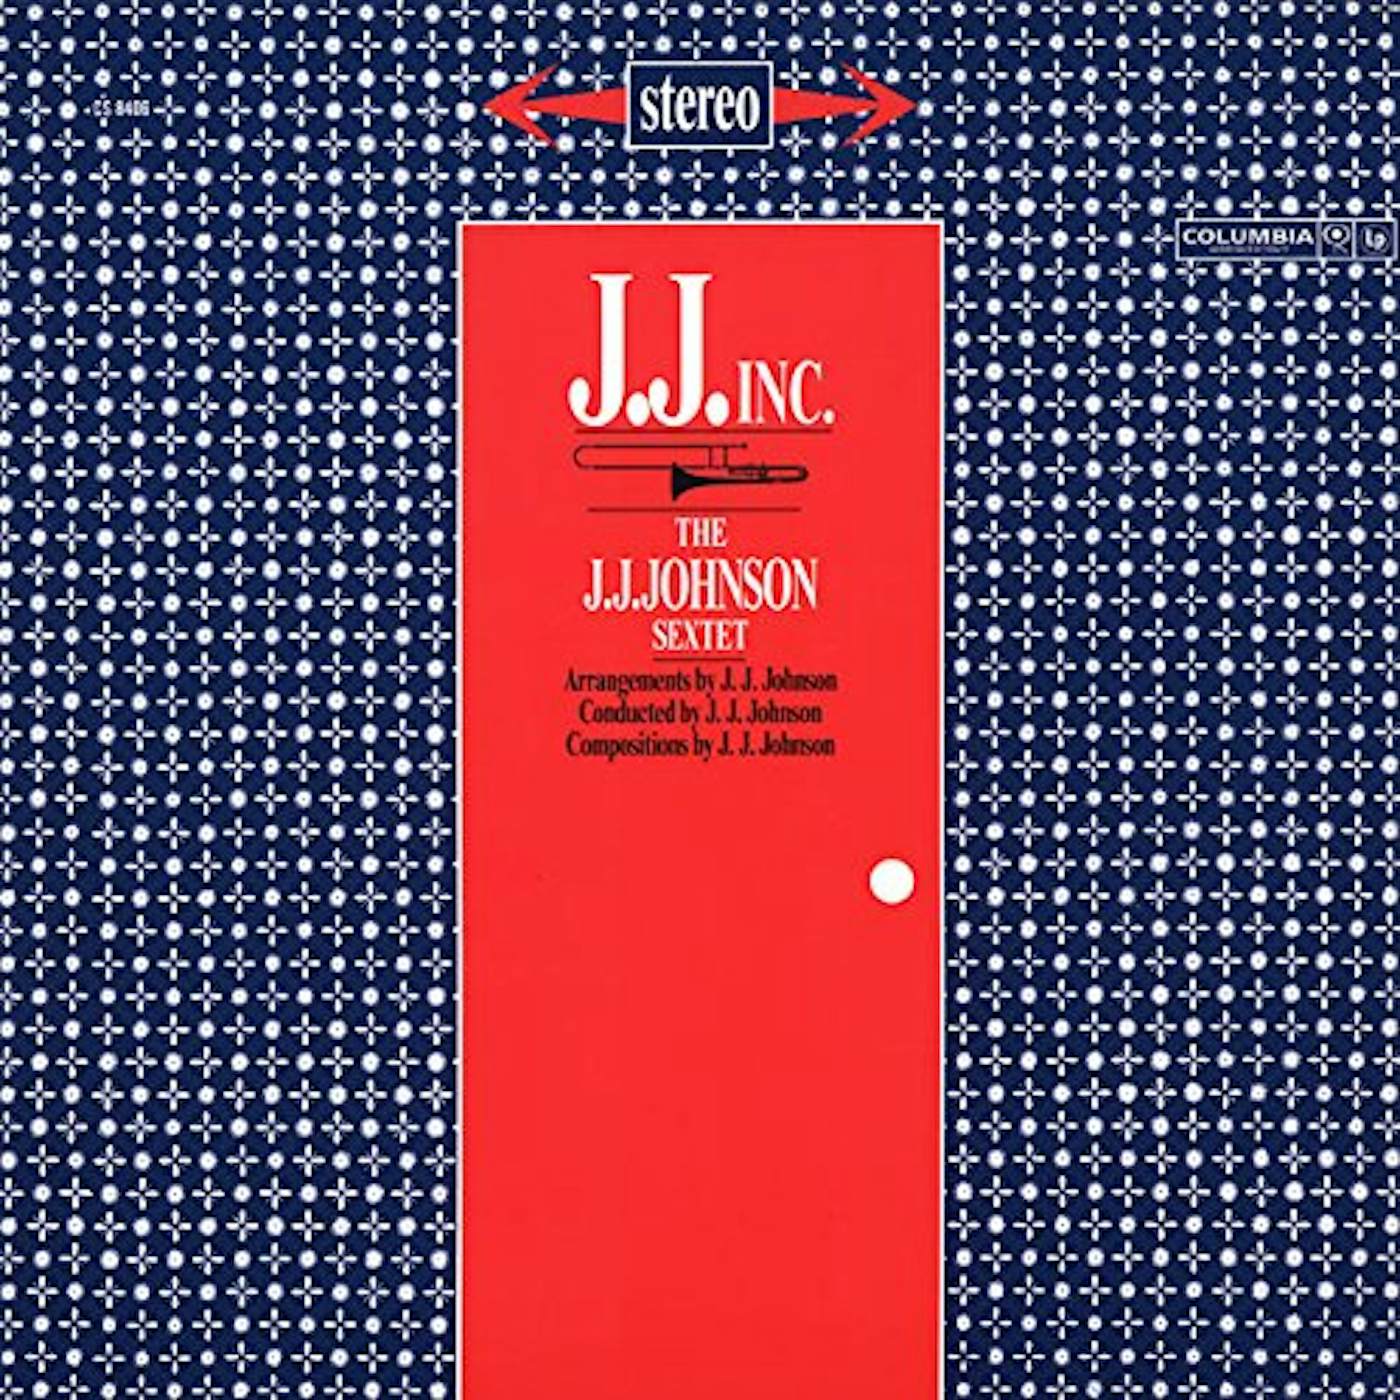 J.J. Johnson J.J. INC Vinyl Record